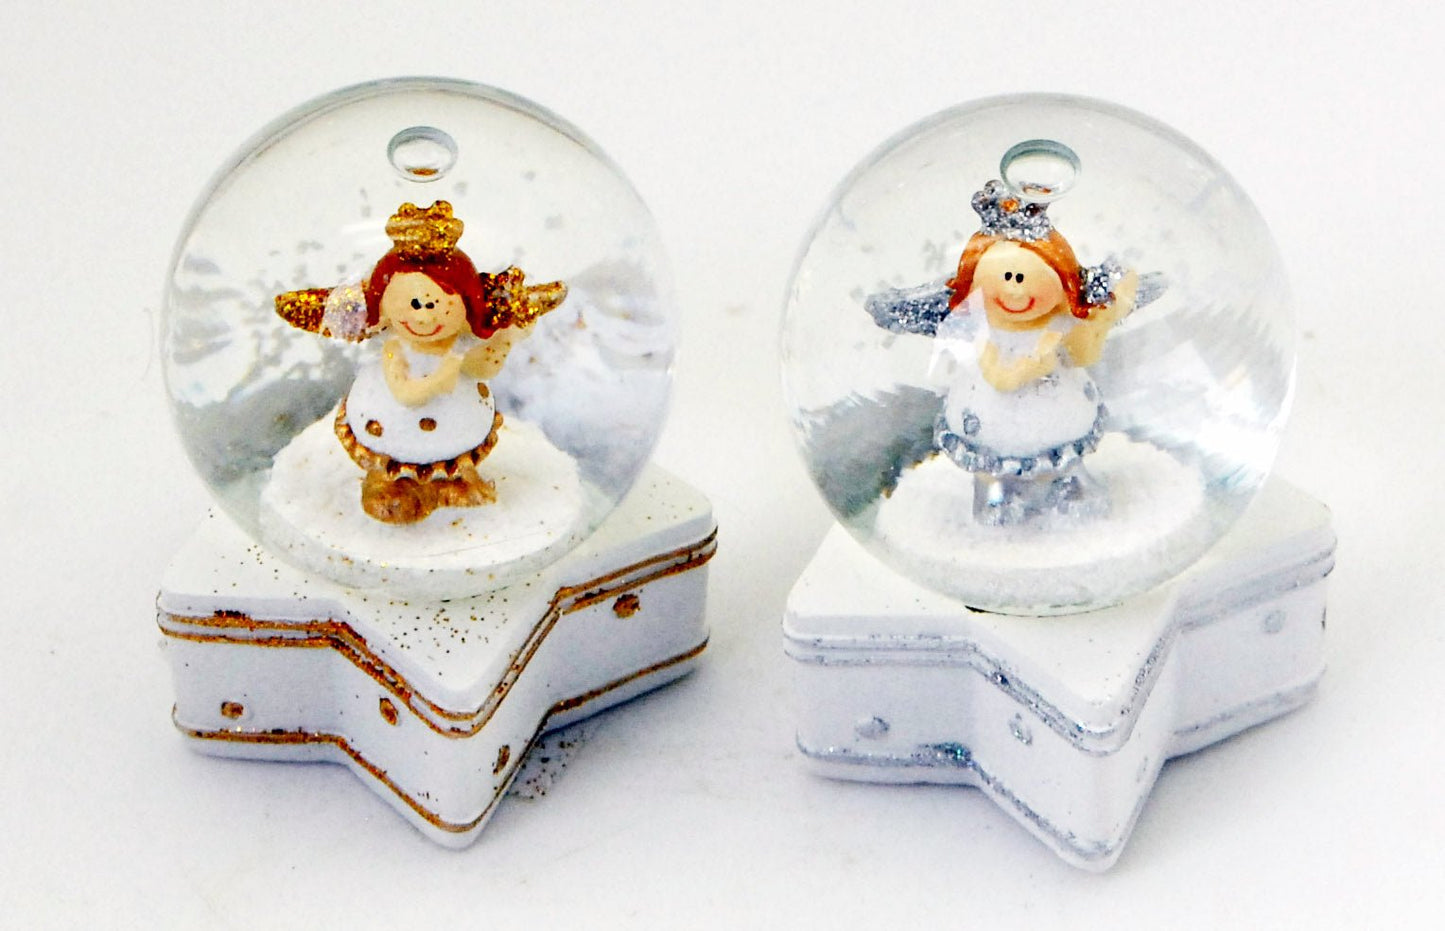 2 Engel-Schneekugeln gold und silber auf Stern 45mm Durchmesser Lufblase - Schneekugelhaus